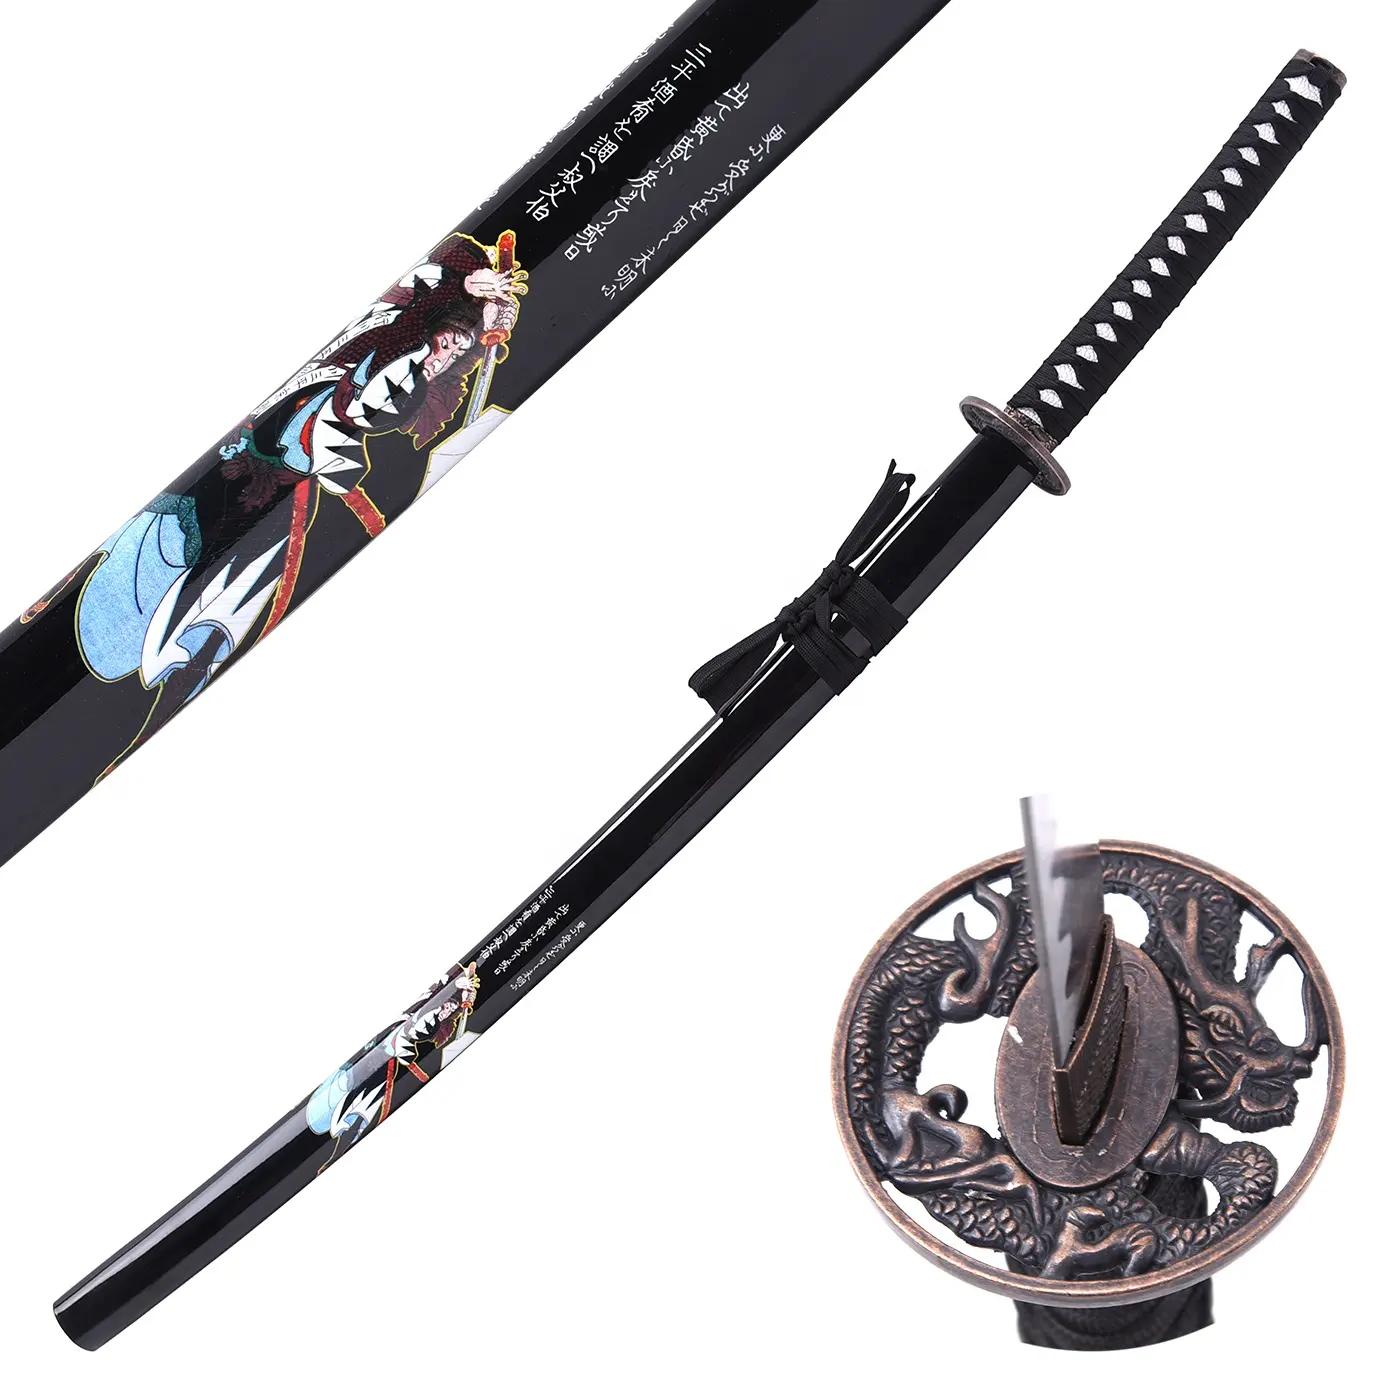 Épées rondes en forme de Dragon et de samouraï, jouets à motif, pour cosplay